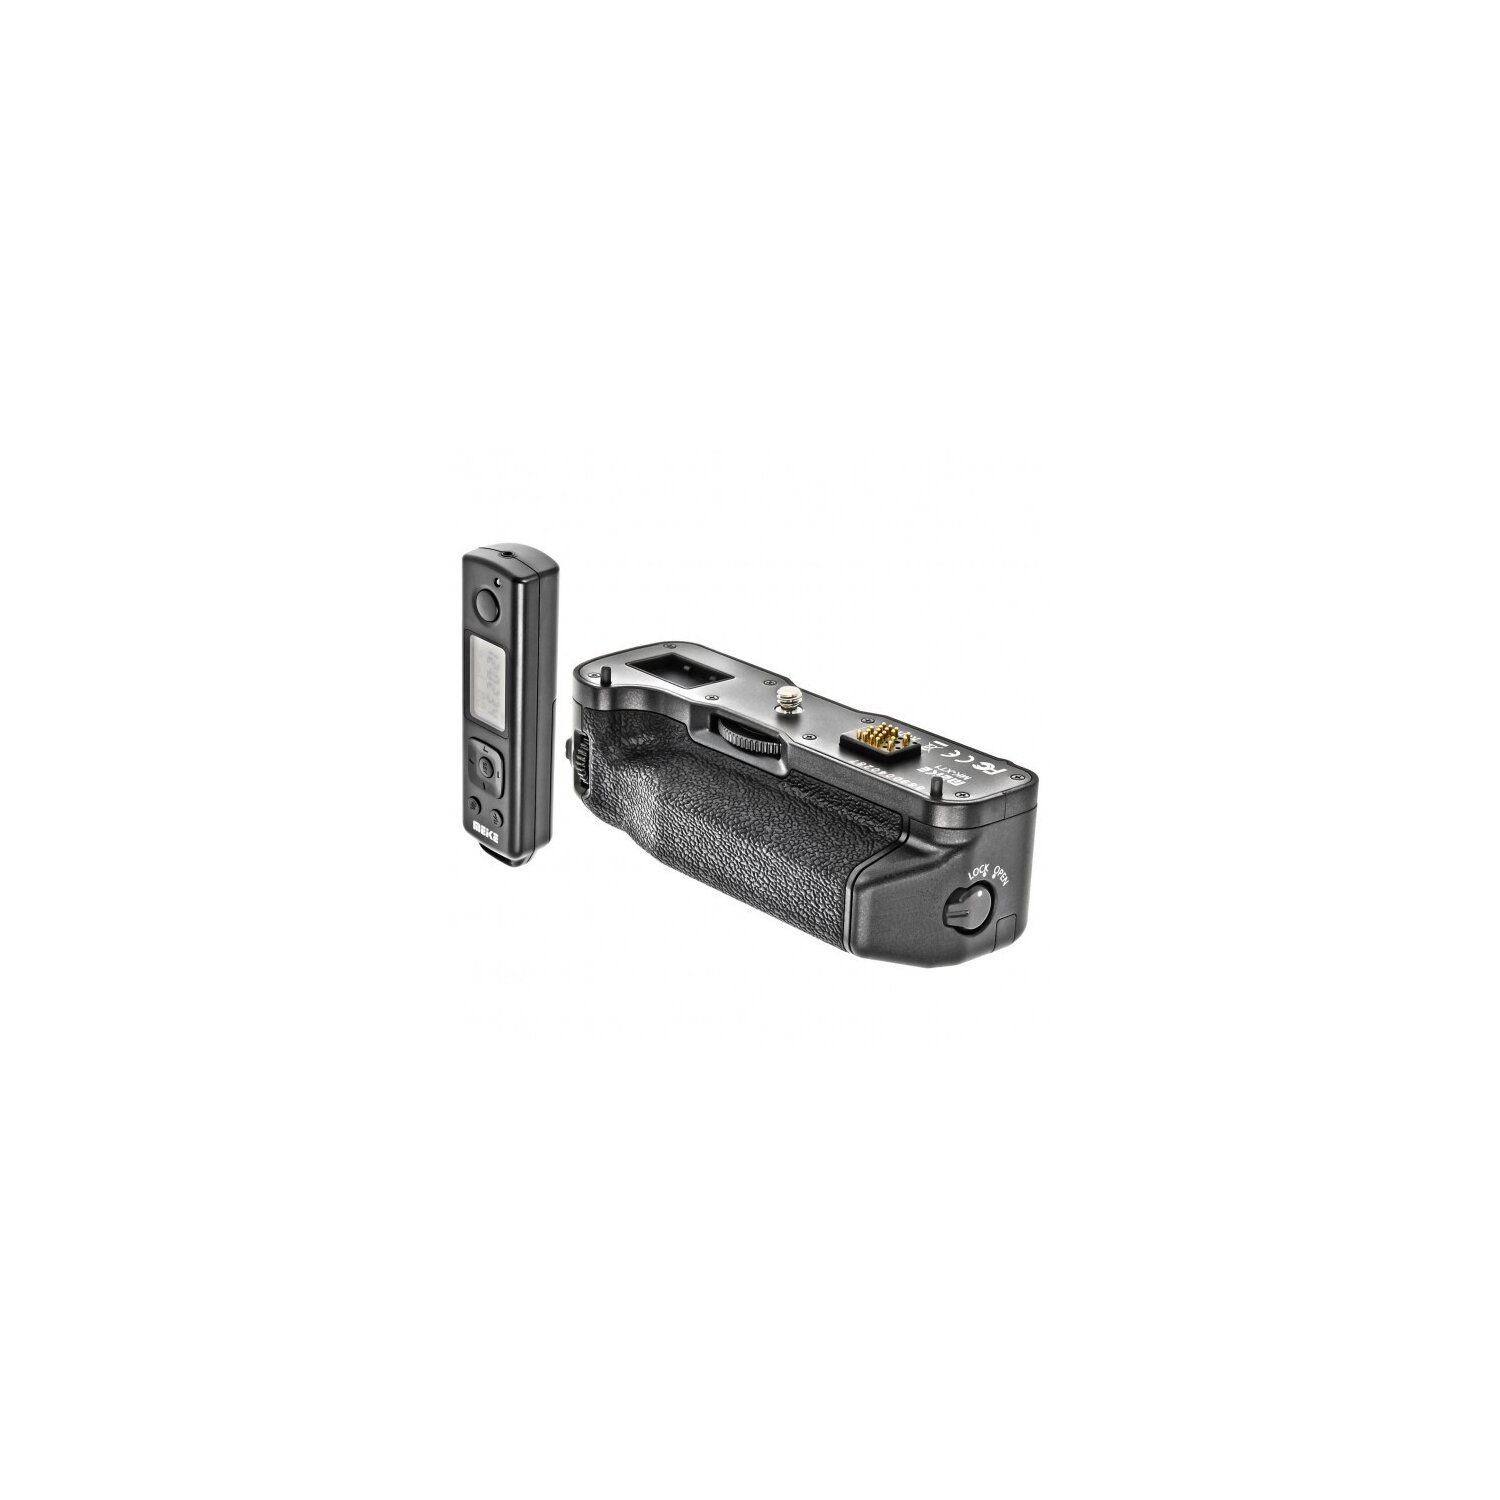 Pro Timer Batteriegriff kompatibel mit Fujifilm X-T1 - inklusive 2,4 GHz Fernauslöser mit Timer- und Intervall-Funktion - Meike MK-XT1